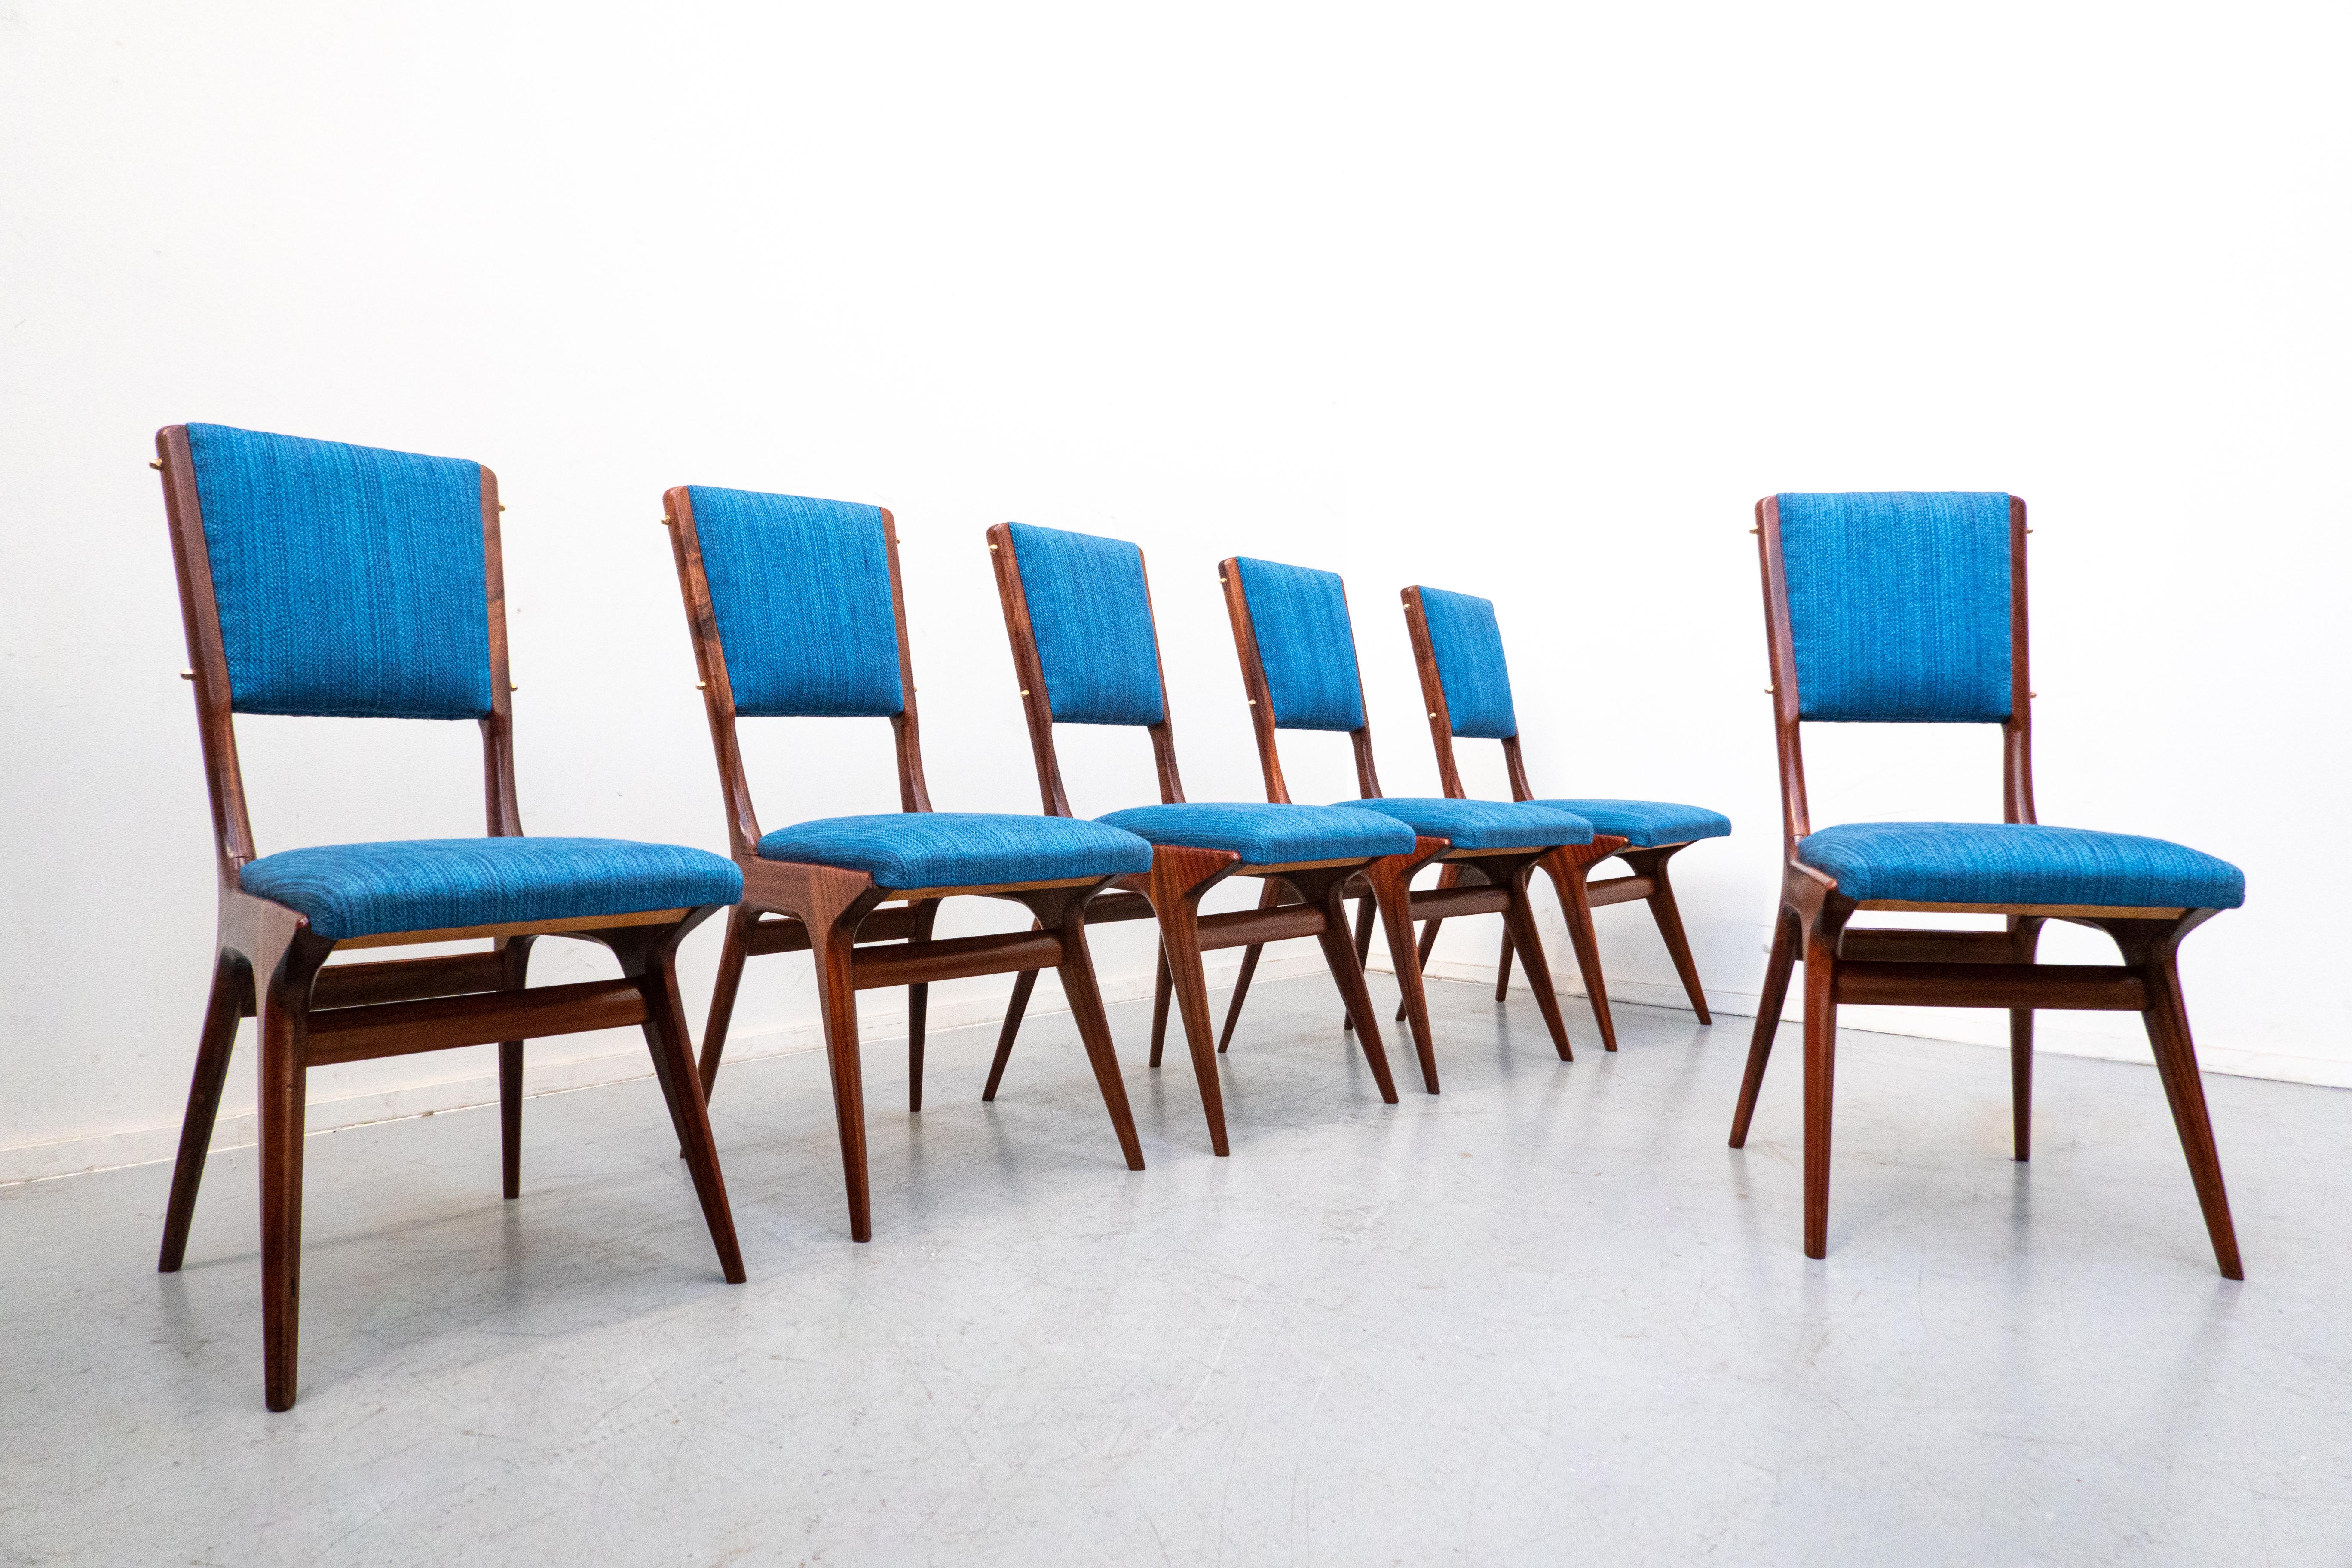 Satz von 6 blauen Stühlen Modell 634 von Carlo de Carli für Cassina, Italien, 1950er Jahre
Mahagoni und blauer Stoff. 
Neu gepolstert.
 